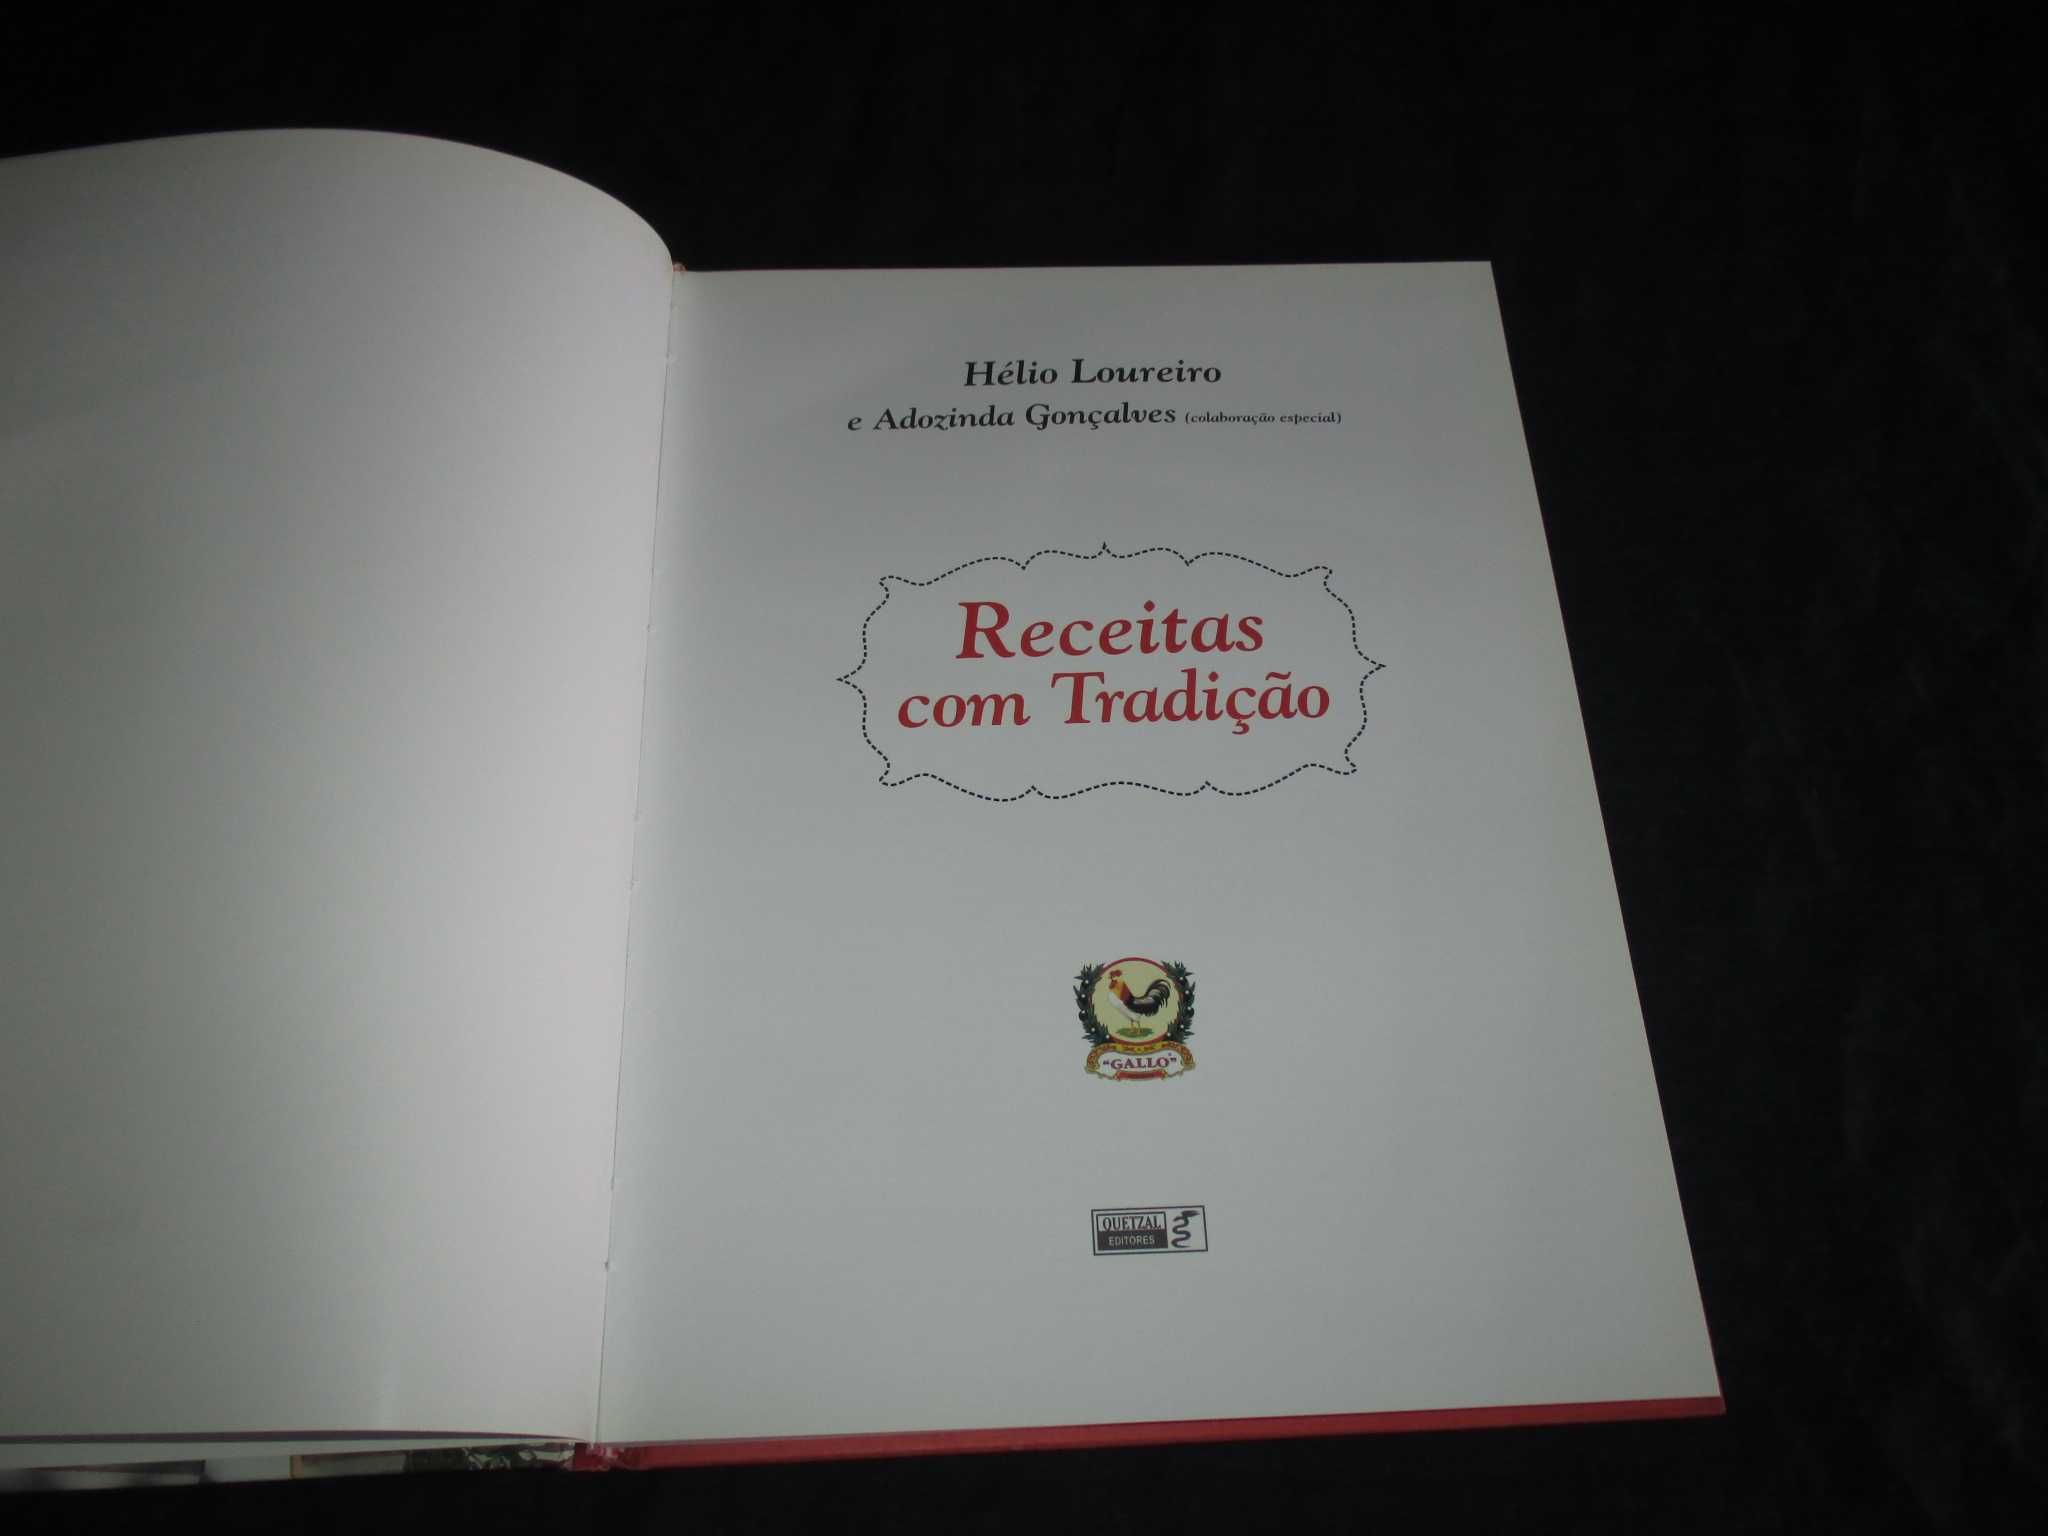 Livro Receitas com Tradição Hélio Loureiro